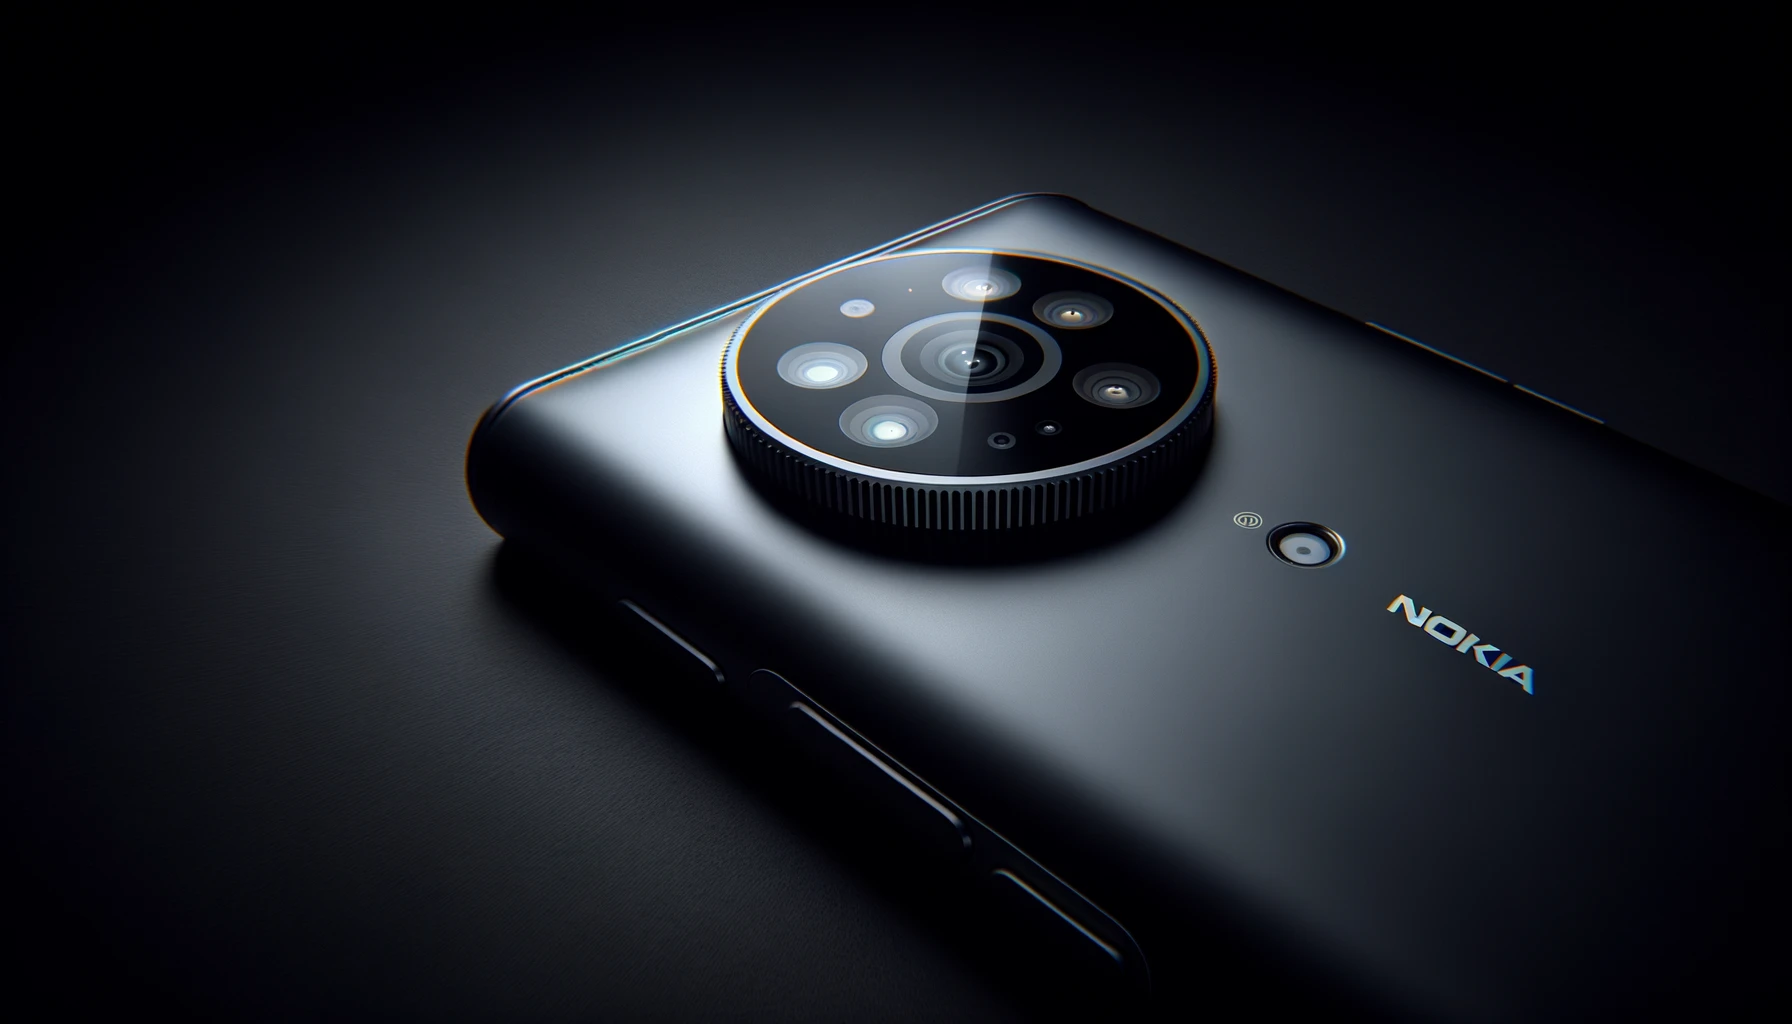 Nokia хотела первой в мире выпустить смартфон с перископической камерой, но в последний момент передумала